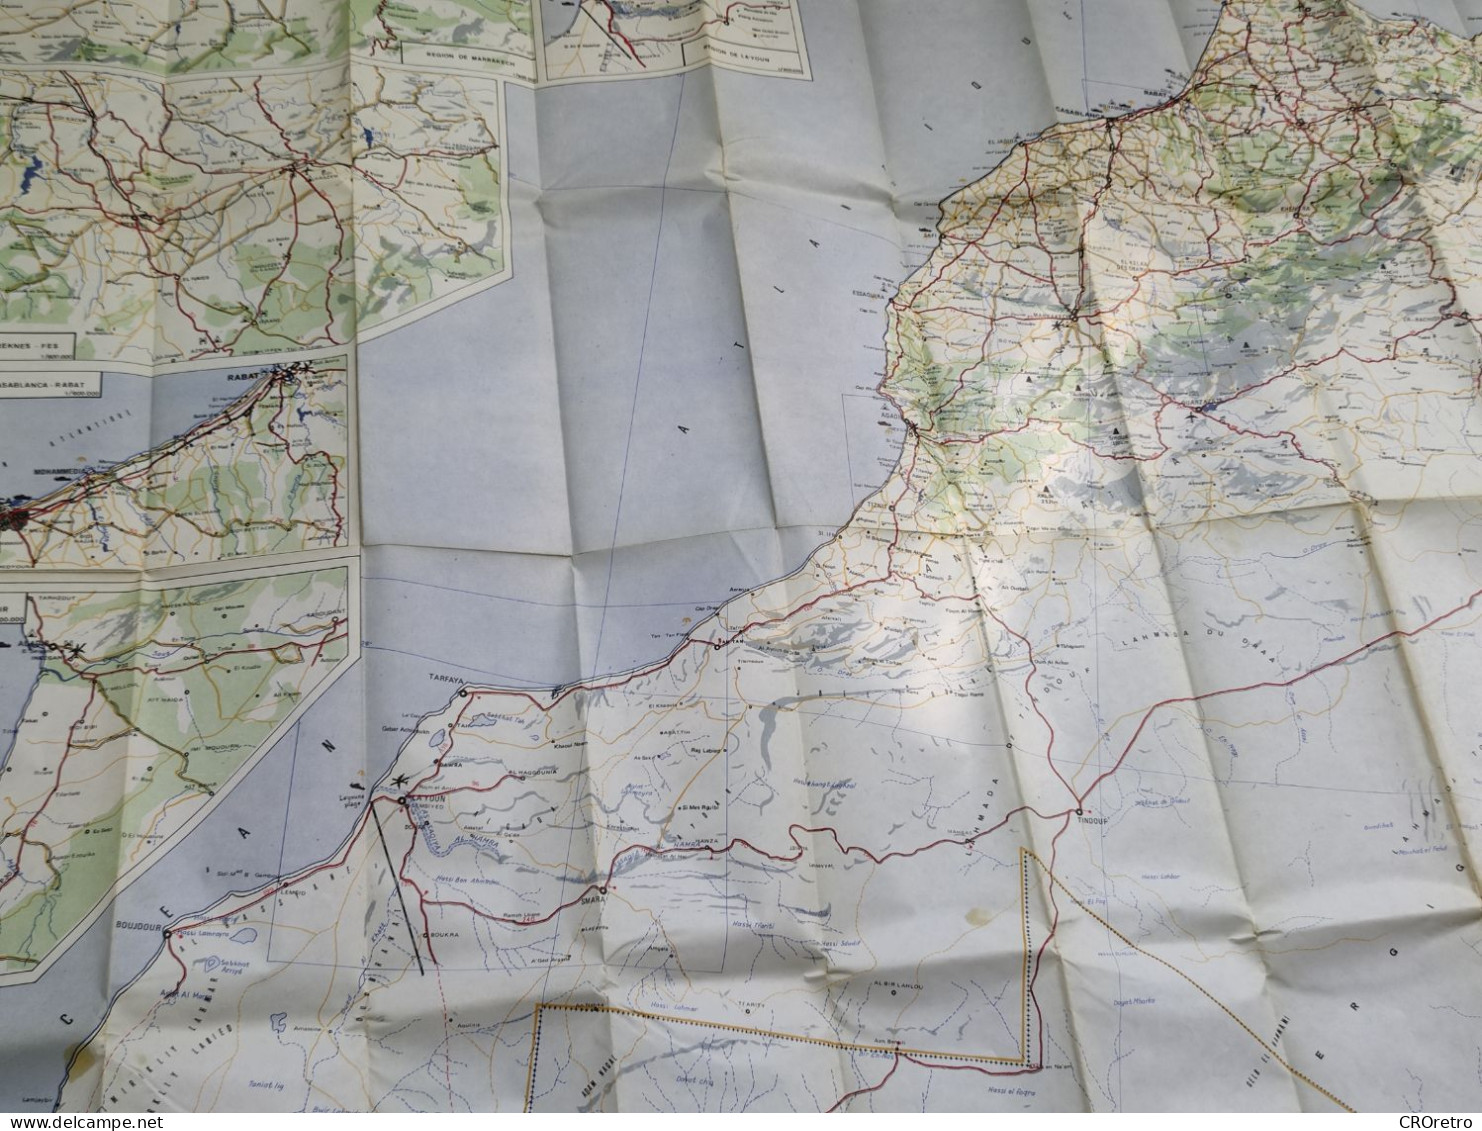 MOROCCO / MAROC, vintage road map, autokarte, 90×115 cm